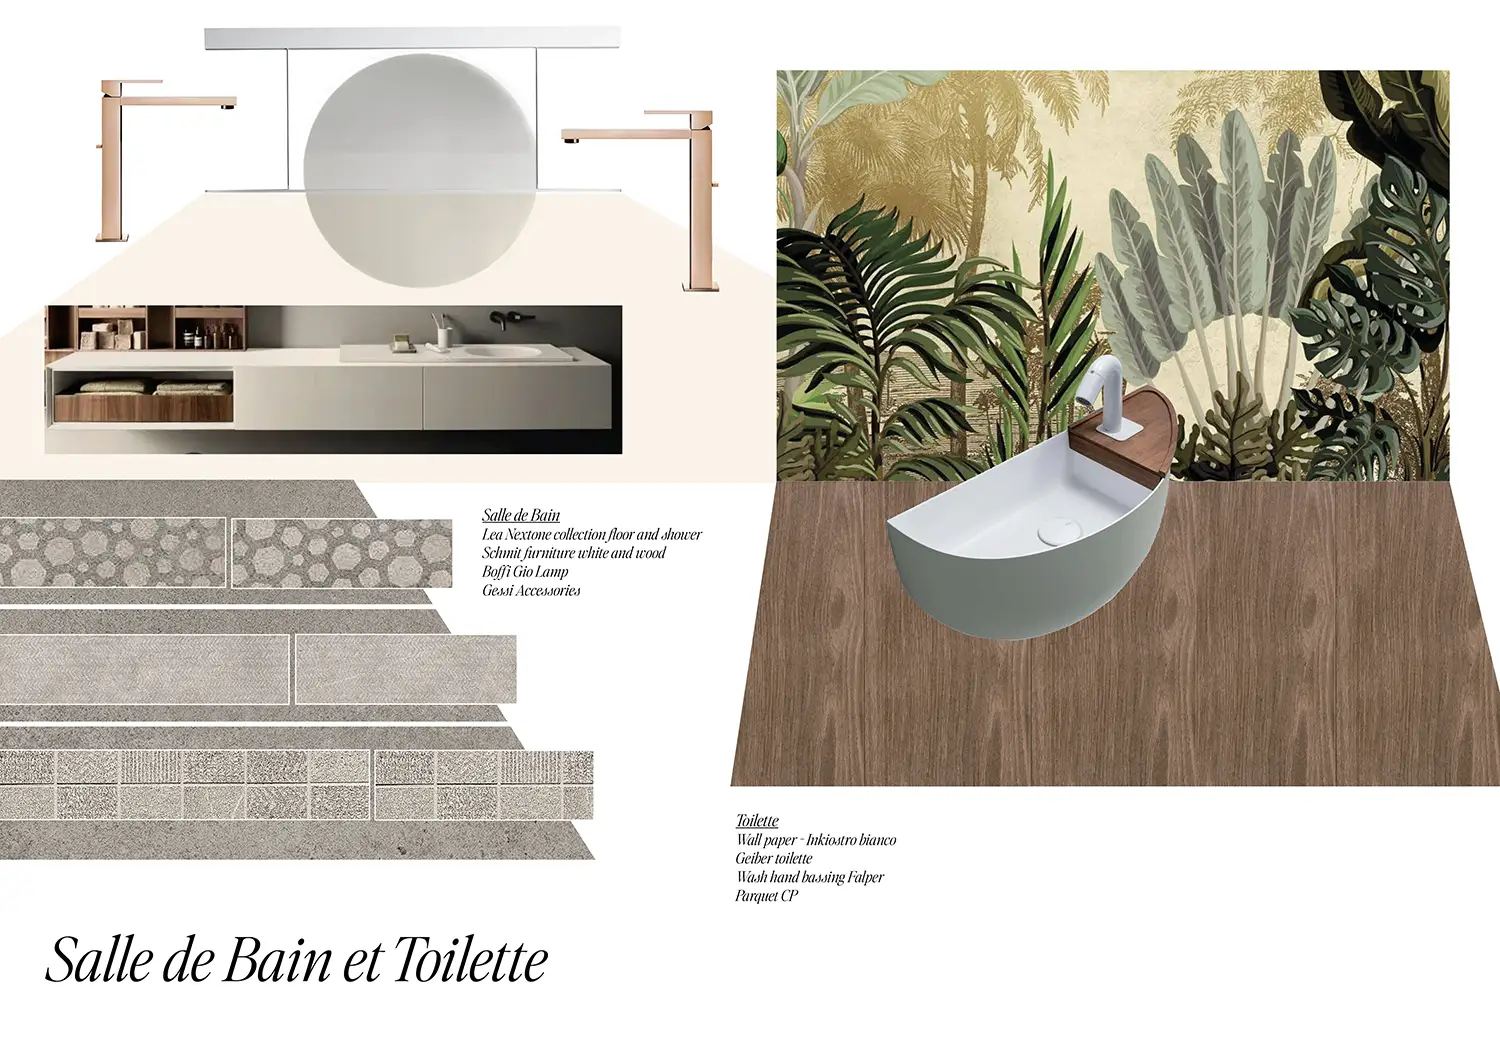 Planches d'inspiration pour la rénovation d'une salle de bains, par le studio Elles Interior Design.